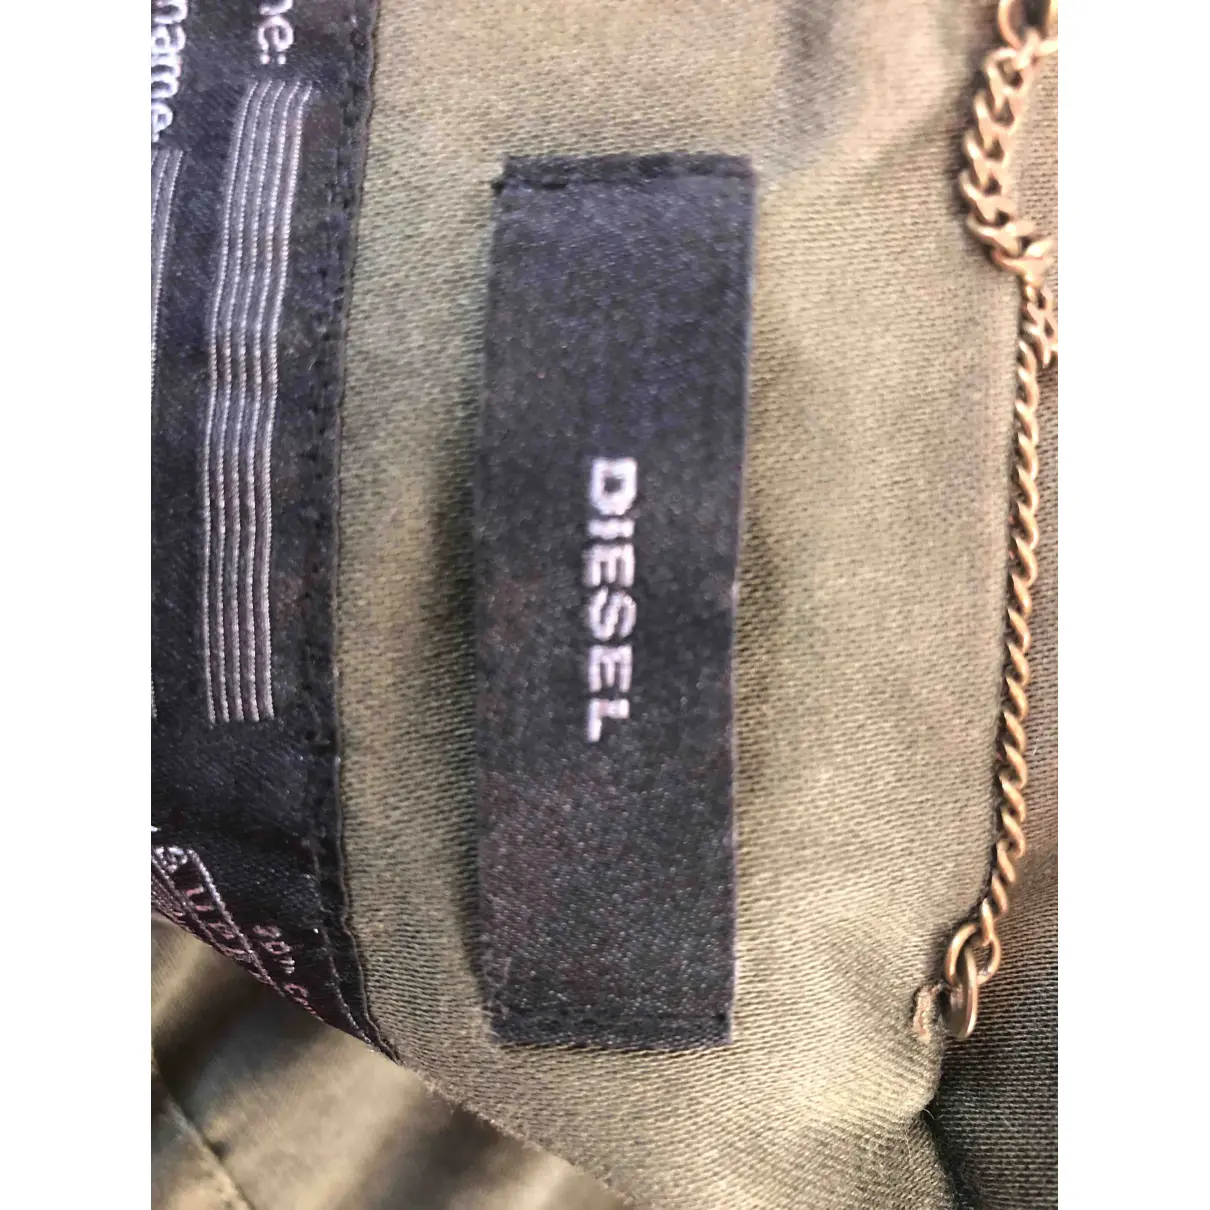 Jacket Diesel